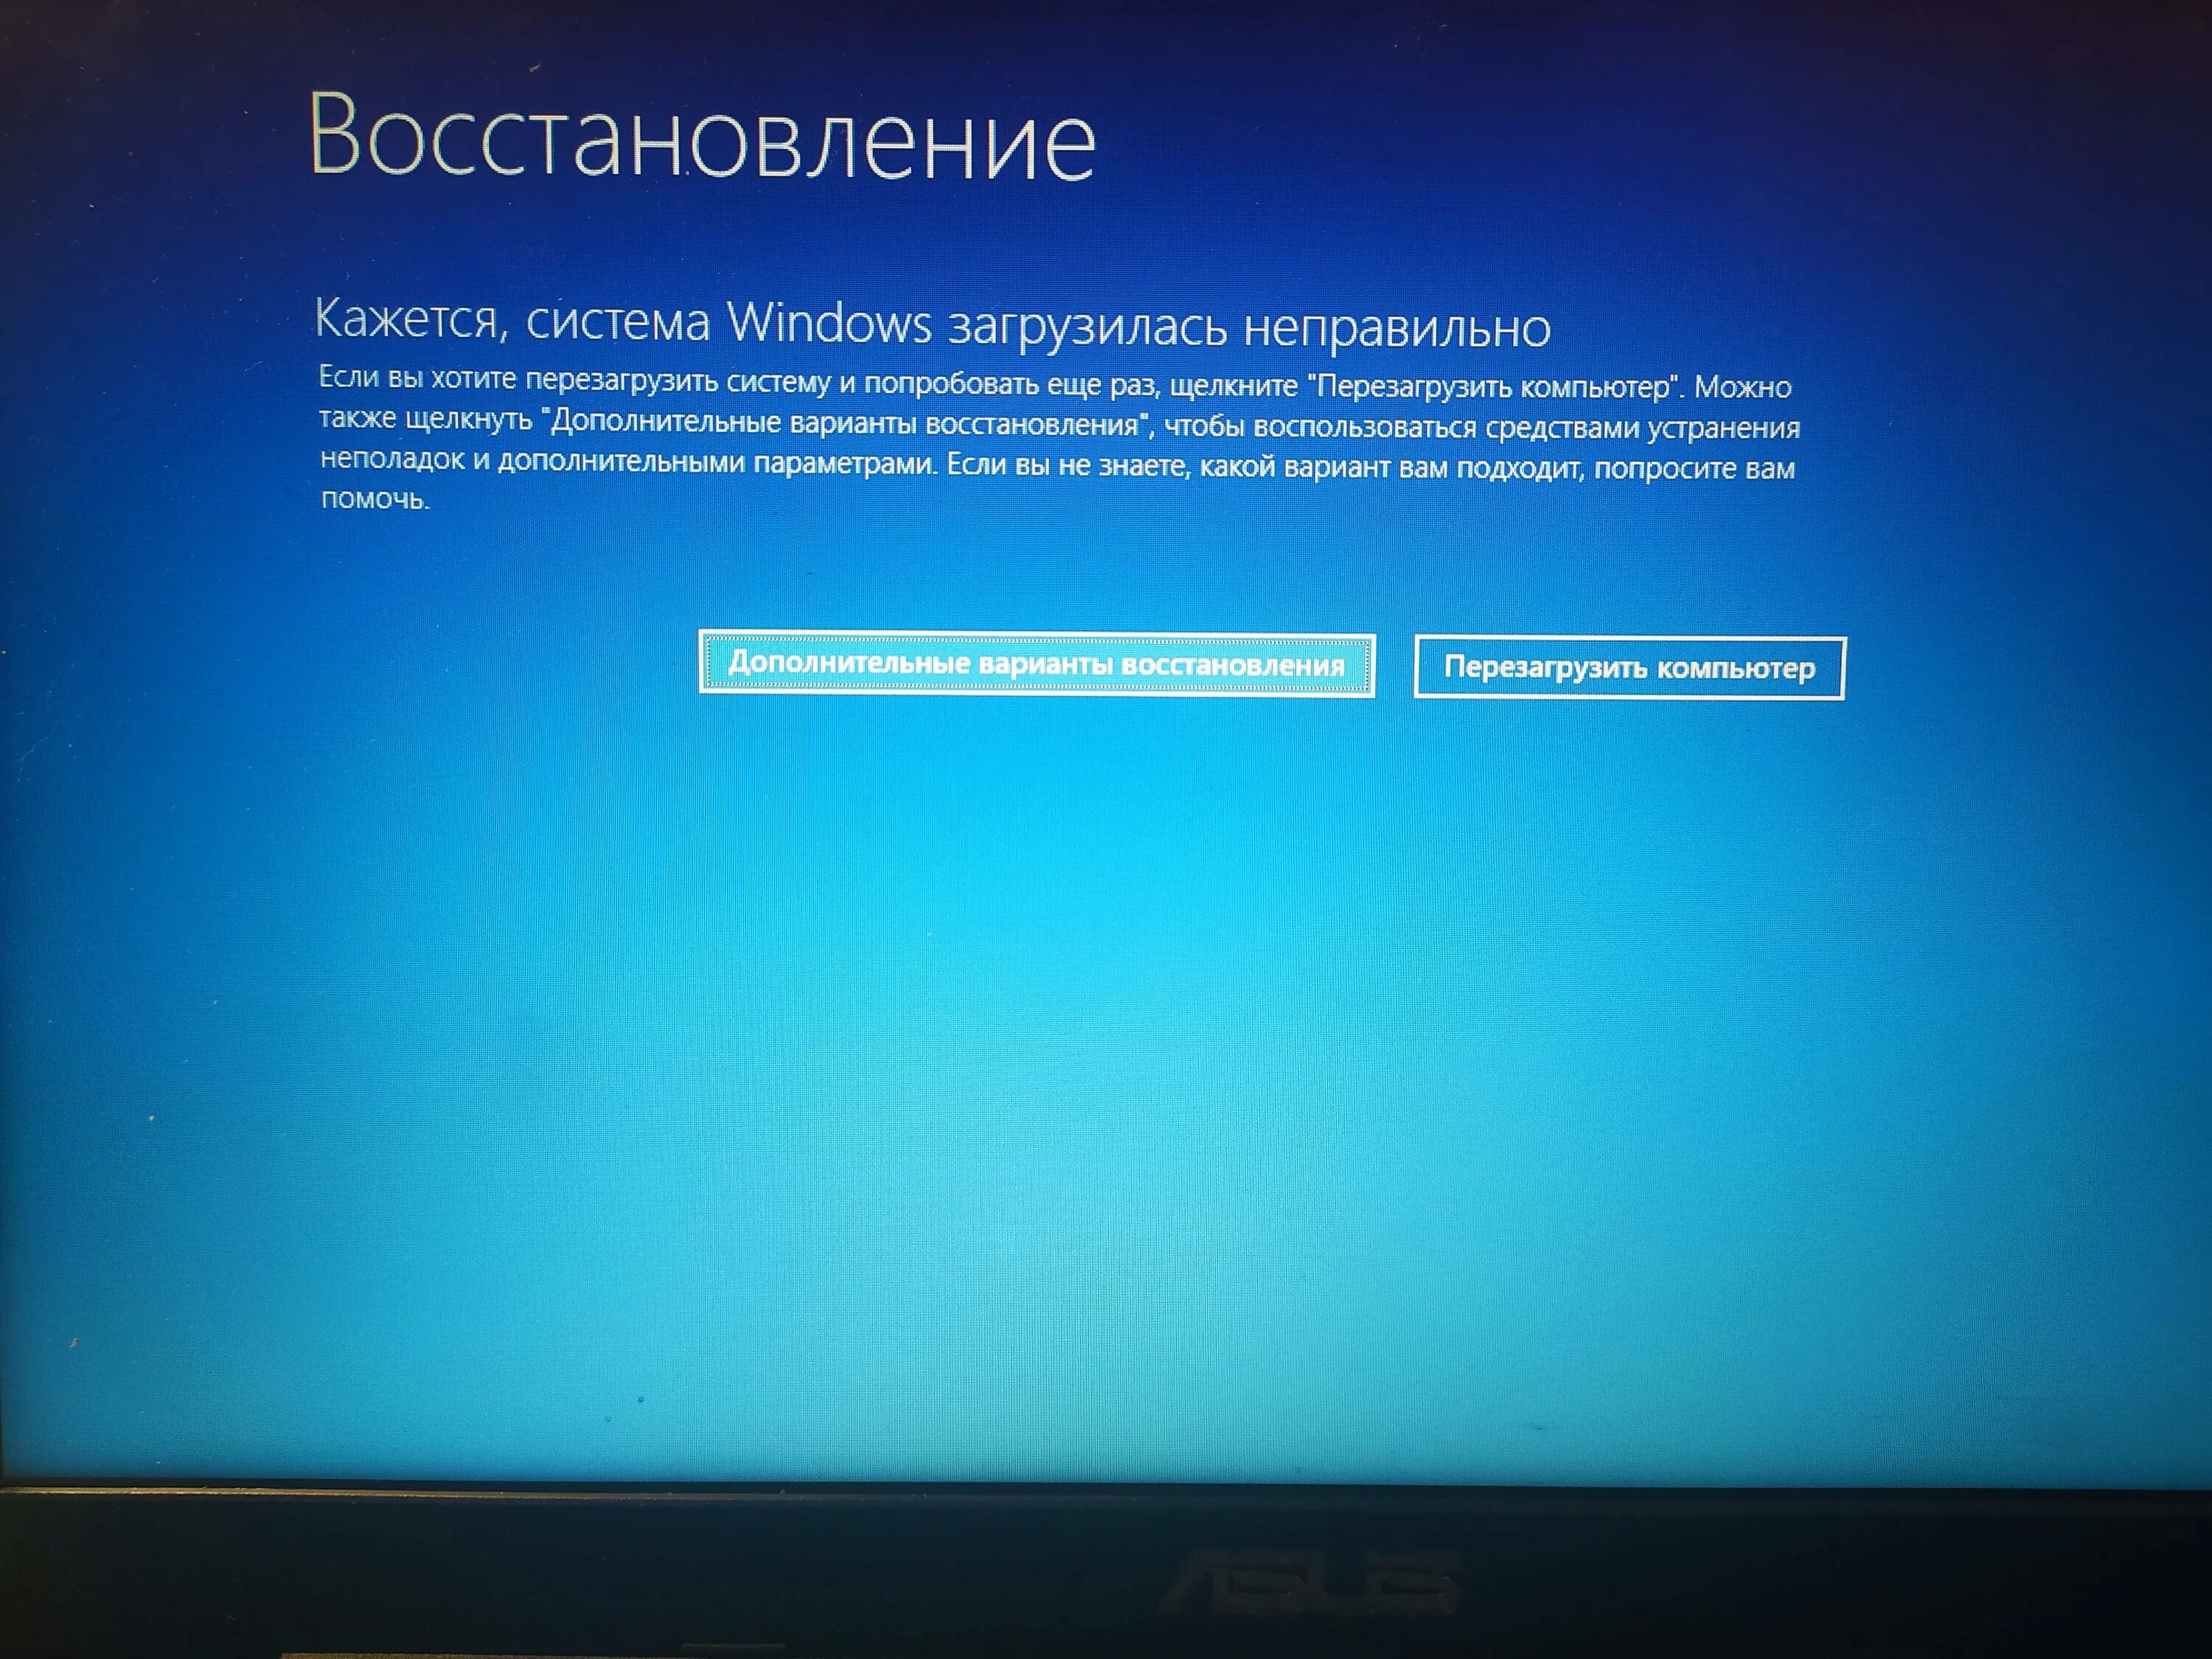 Восстановление Windows. Автоматическое восстановление Windows. Экран восстановления виндовс. Компьютер запущен некорректно Windows 10.